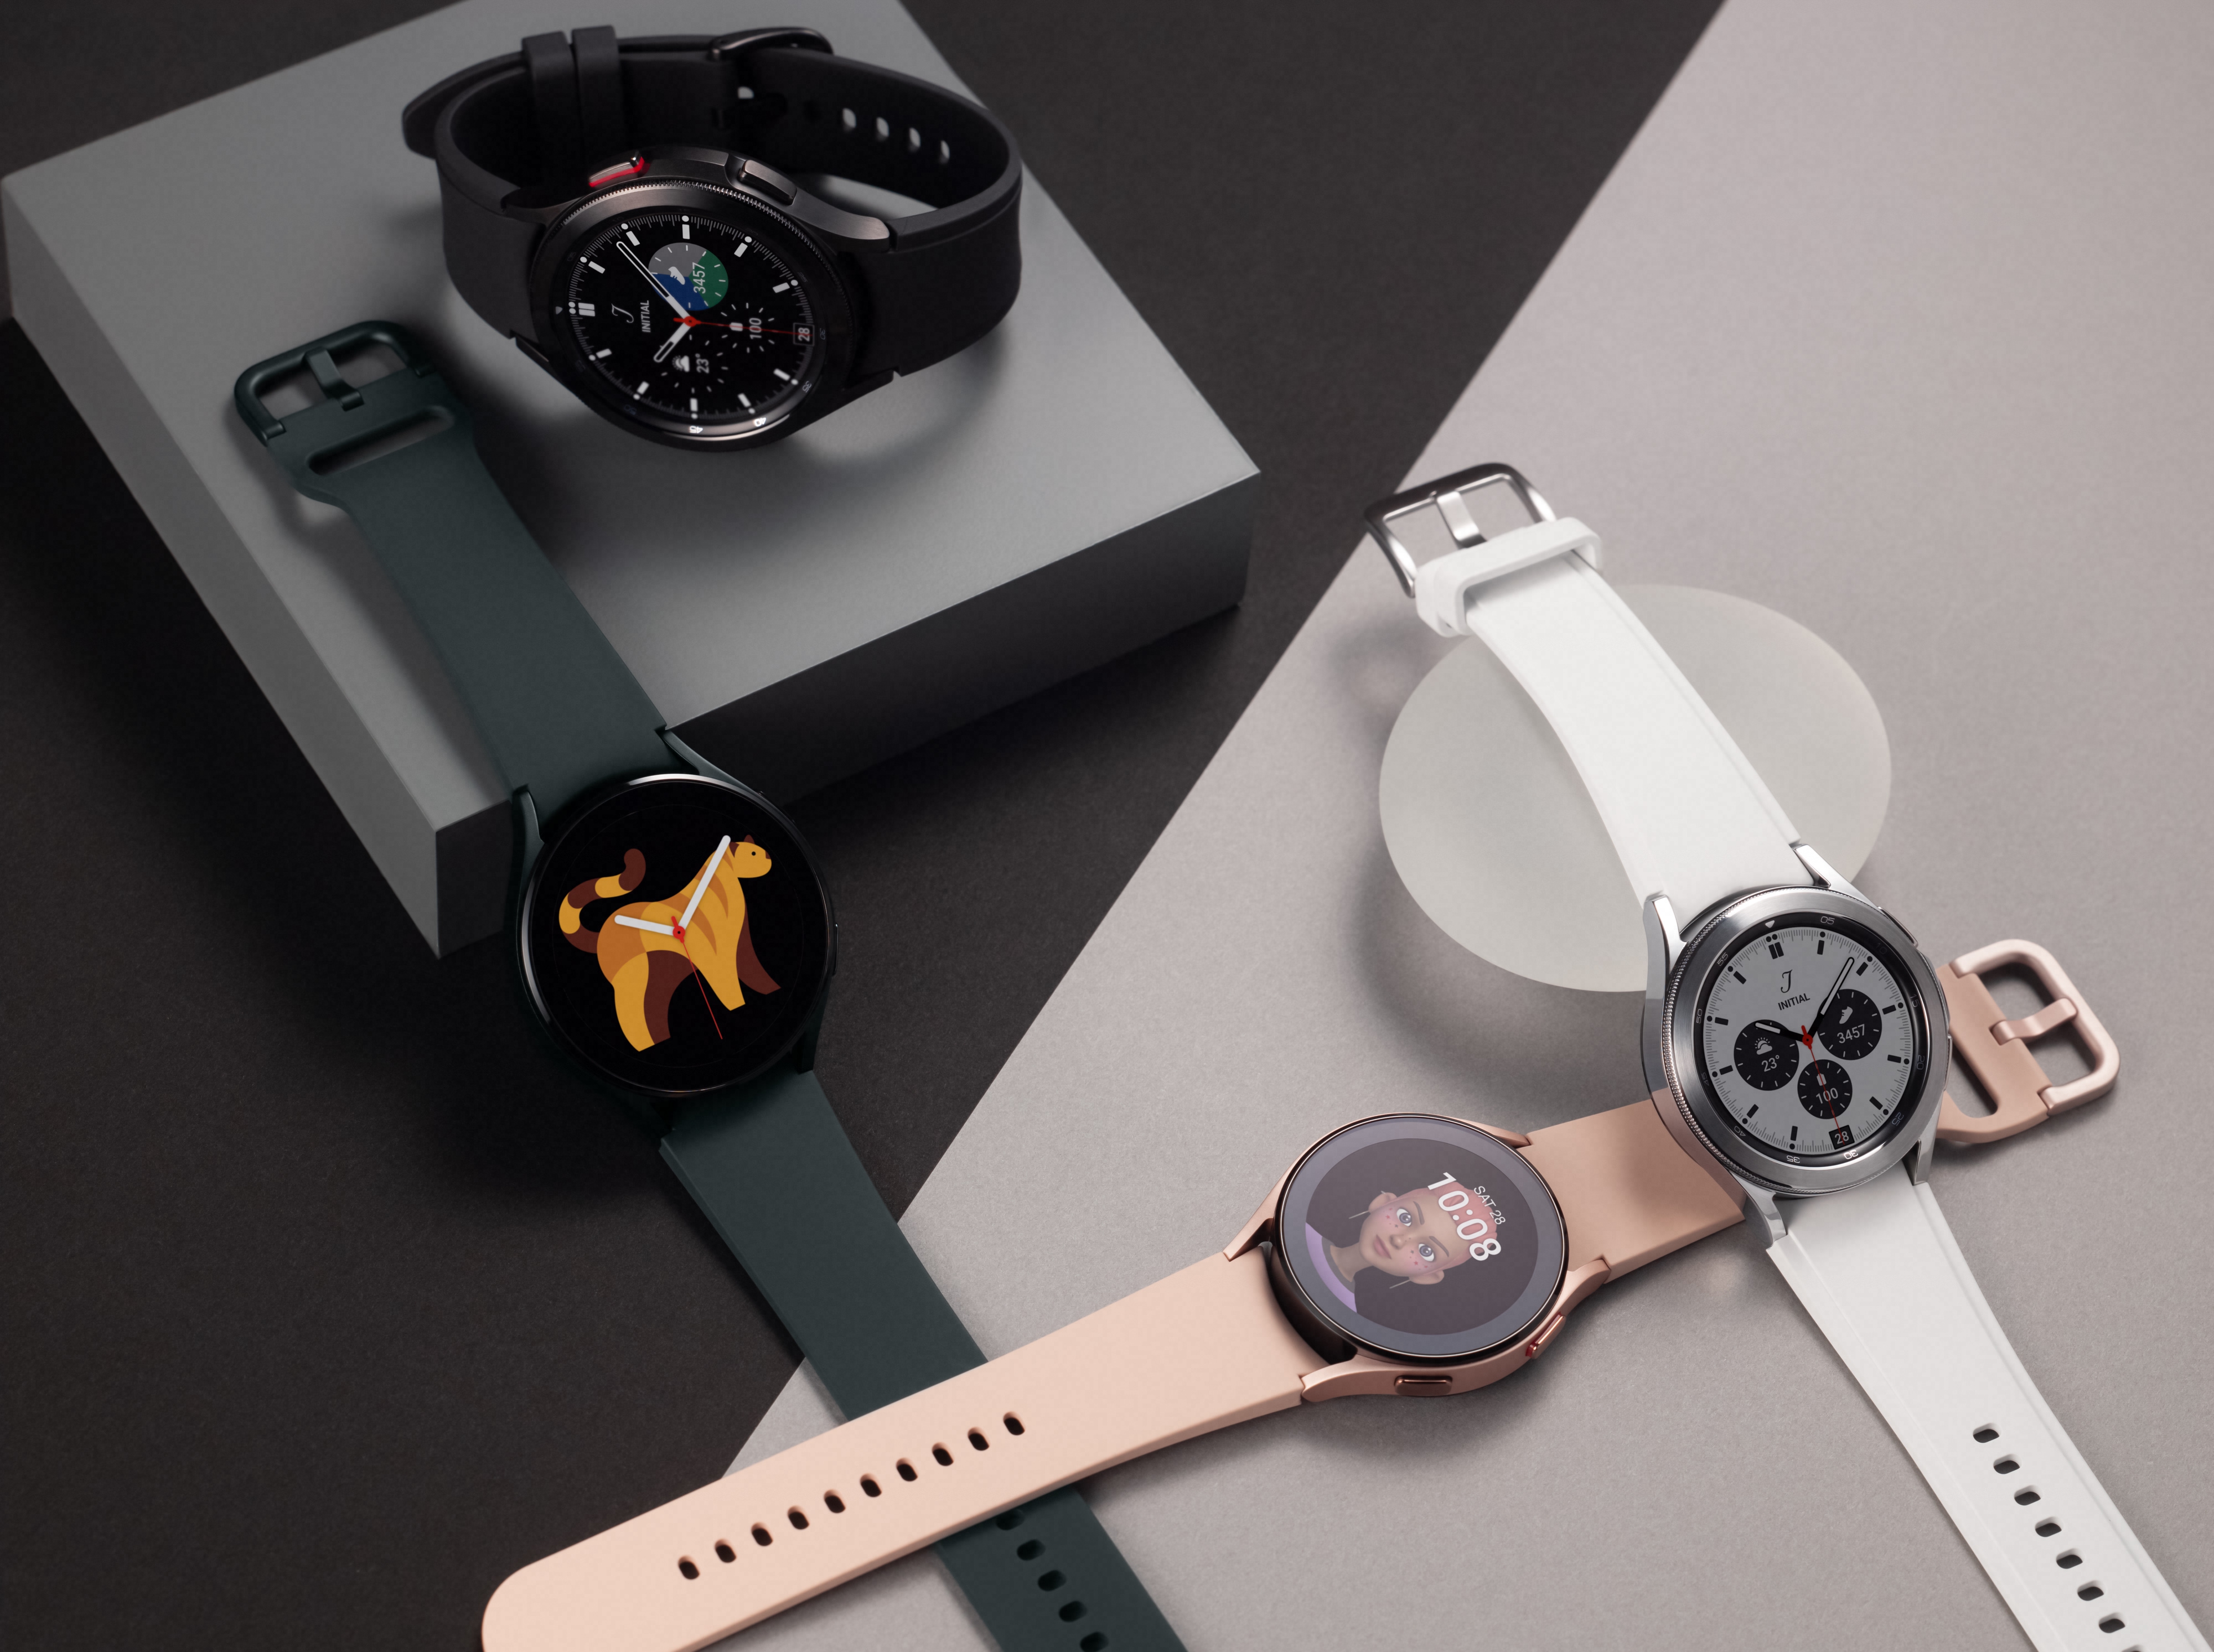 Galaxy Watch 4 e Watch 4 Classic com Wear OS são revelados pela Samsung | Gadgets